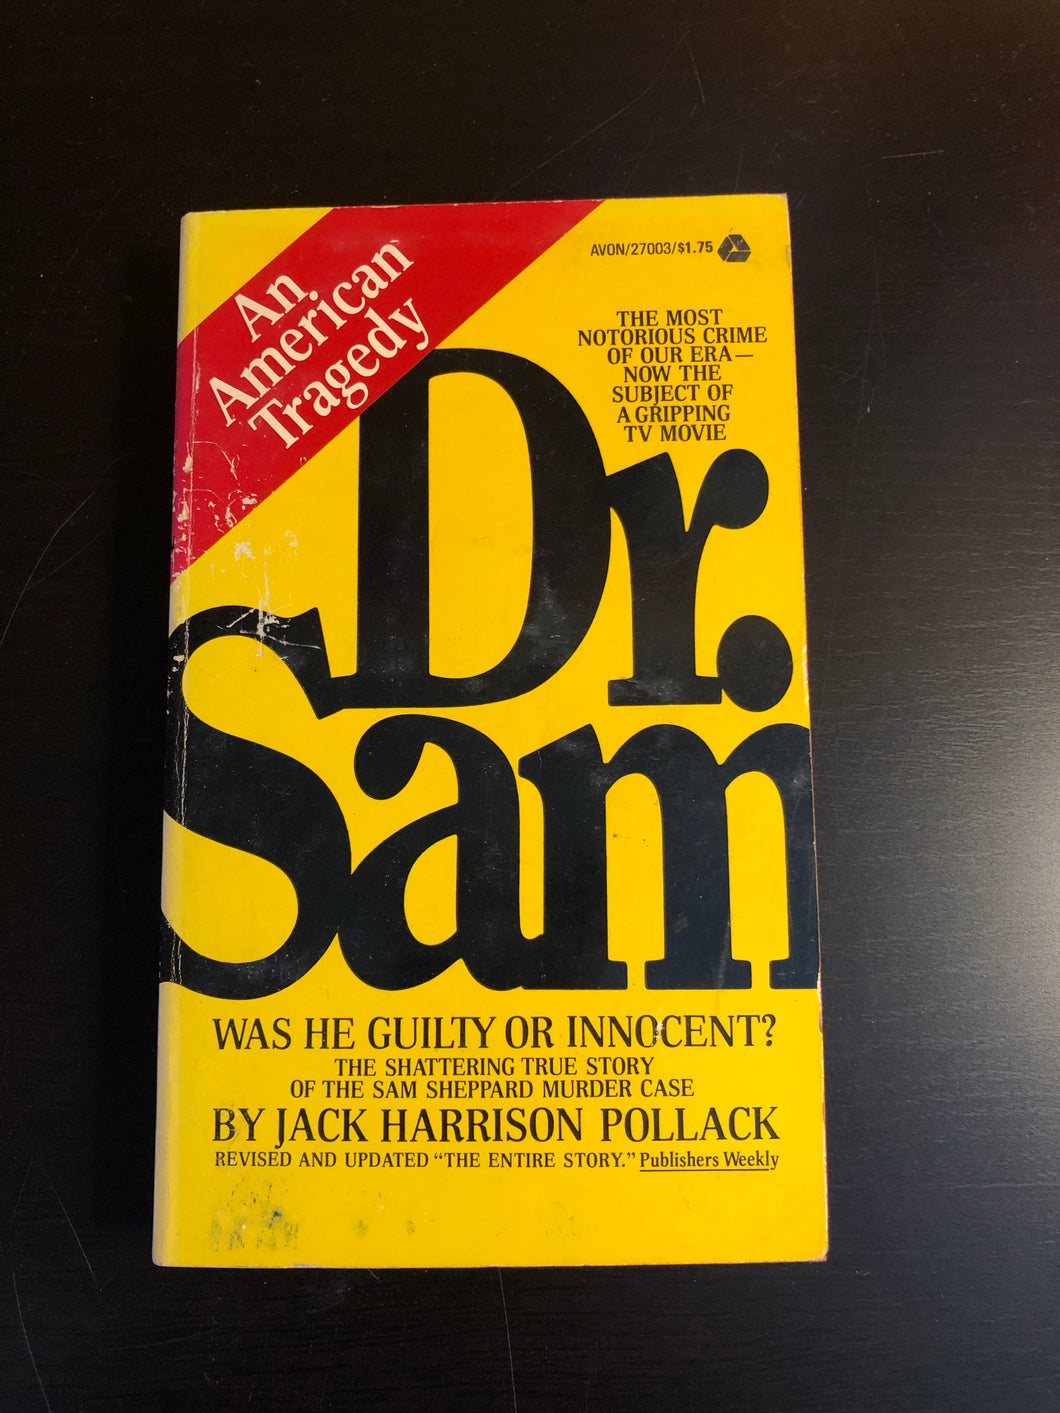 Dr. Sam: An American Tragedy